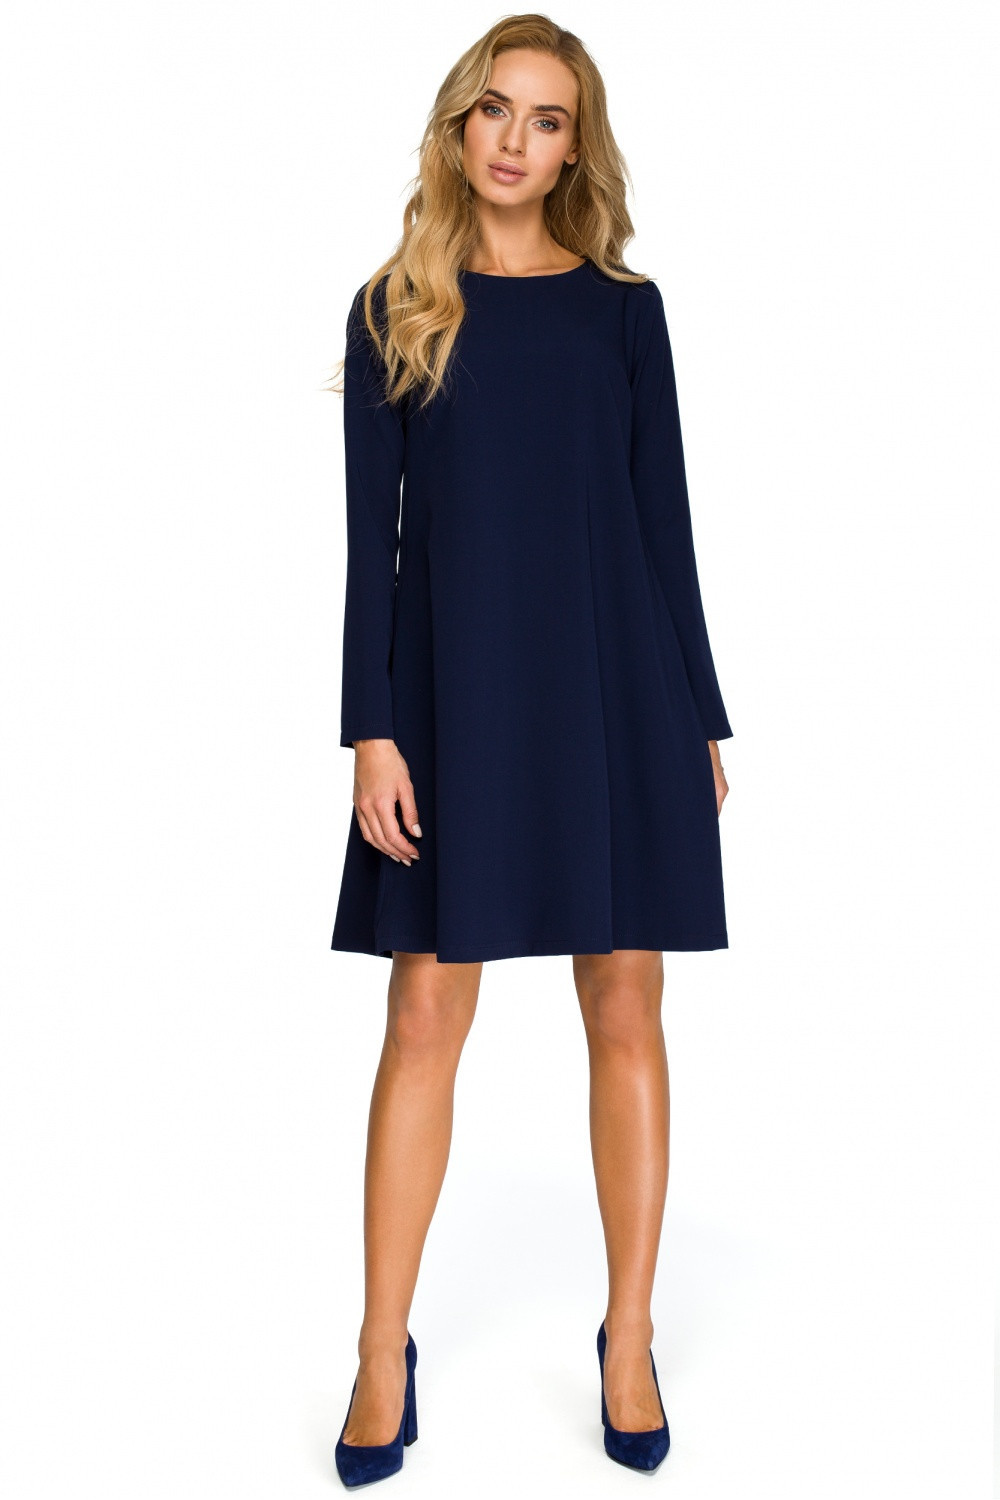 Společenské šaty model Style model 14564587 - STYLOVE Velikost: M, Barvy: tmavě modrá